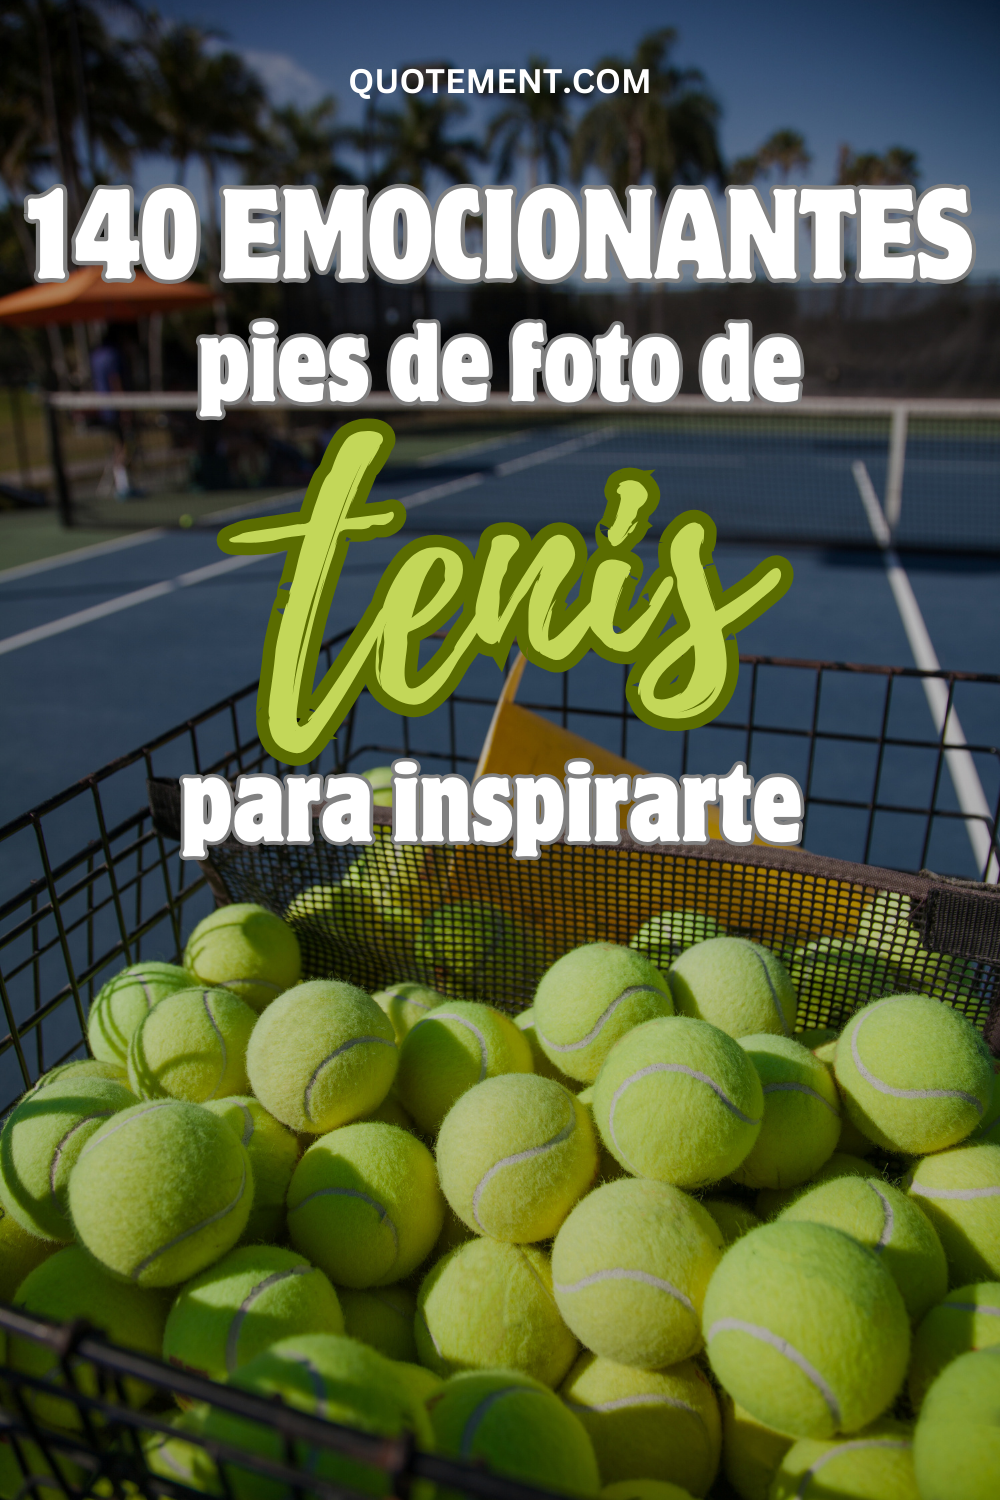 Top 140 Emocionantes pies de foto de tenis para servirle bien